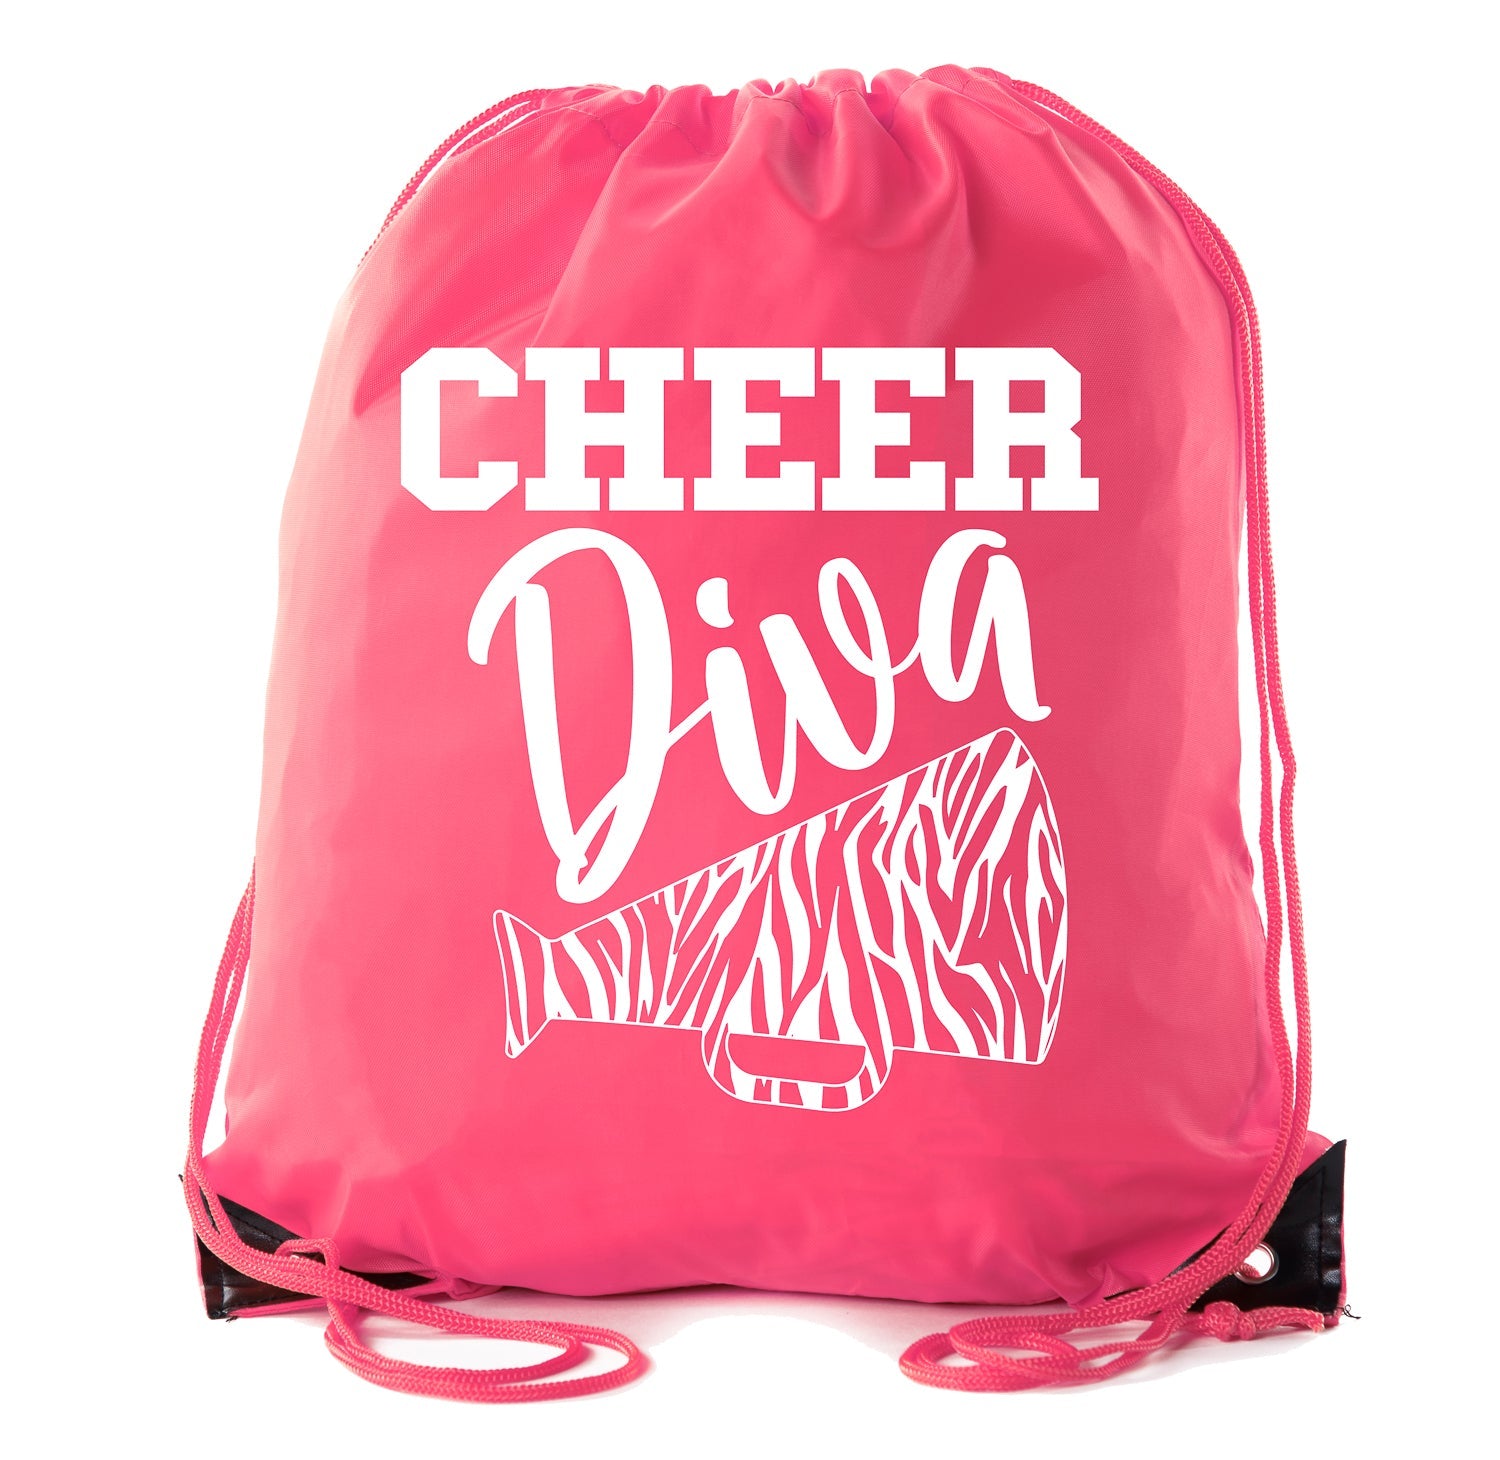 Cheer Diva - Zebra Bullhorn Polyester Drawstring Bag - Mato & Hash